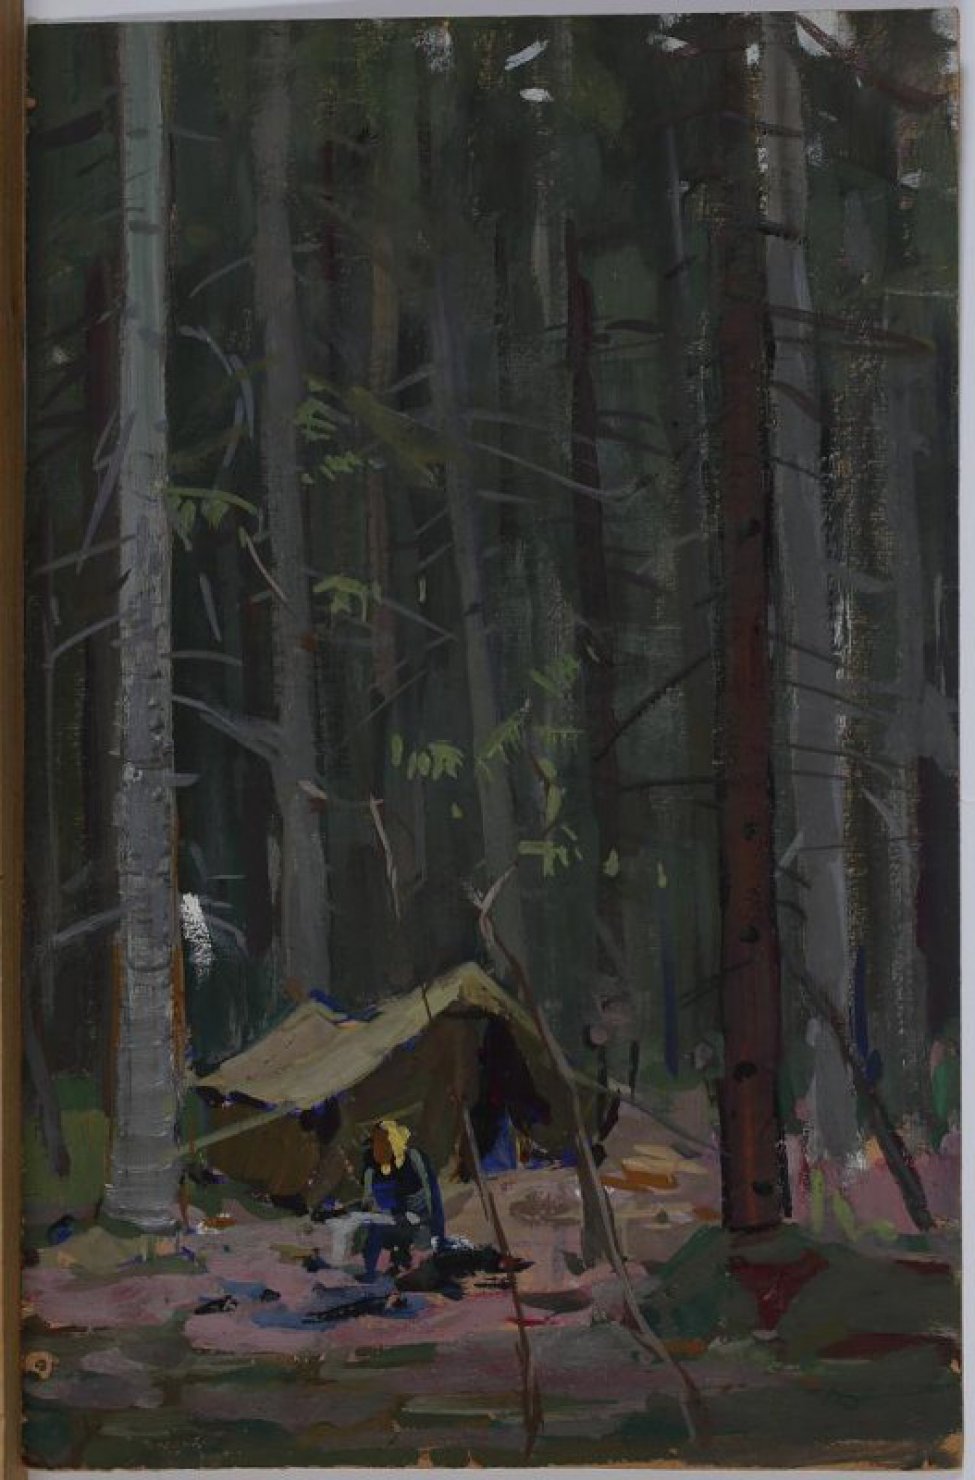 На фоне густого леса на дальнем плане - в нижней части картины изображена туристическая палатка, перед ней - схематичное изображение фигуры сидящего человека.